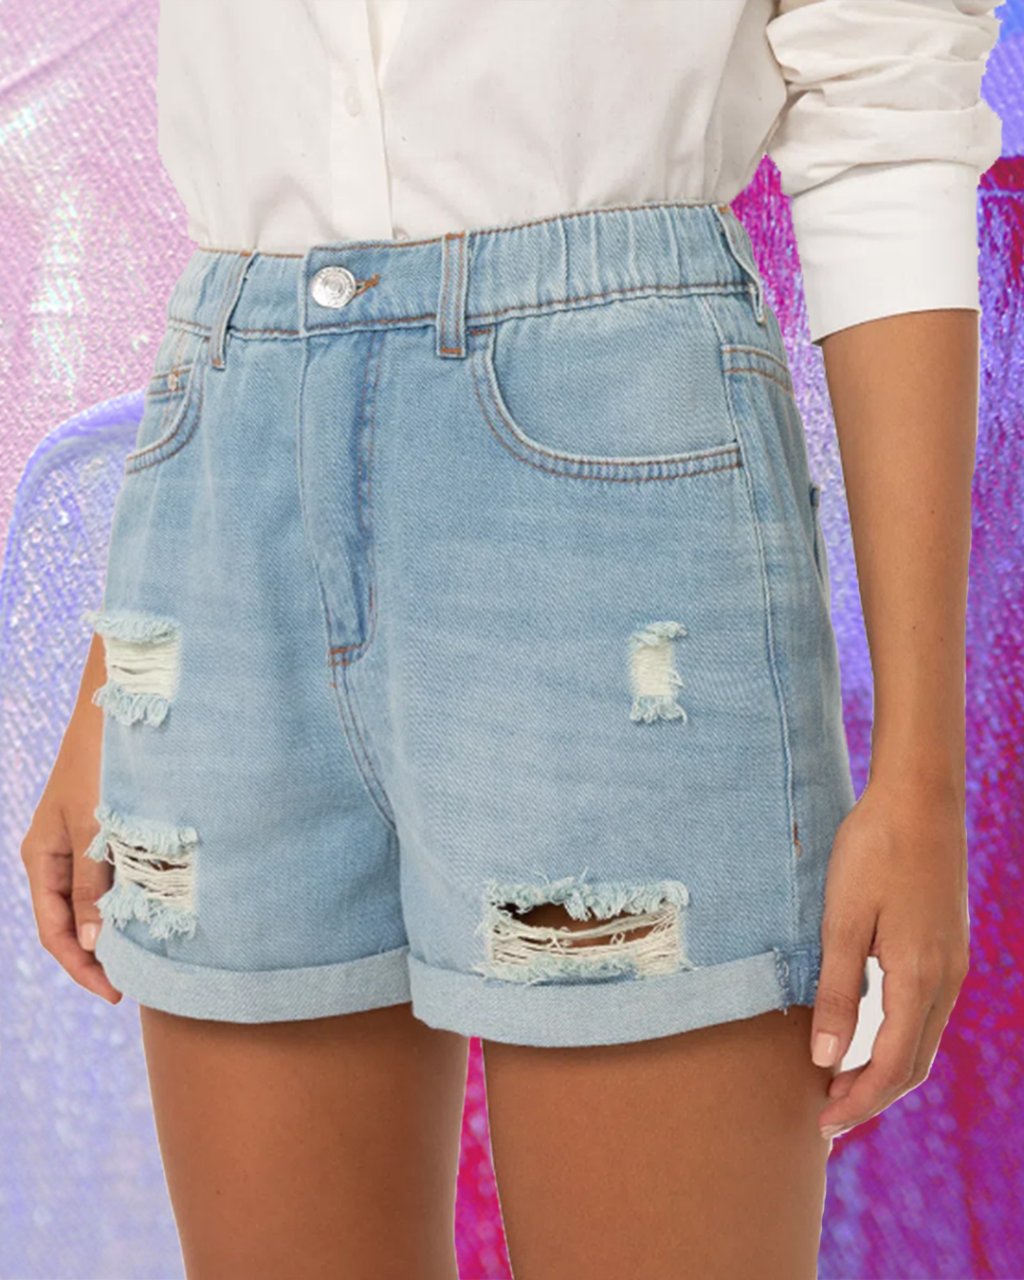 Montagem em fundo lilás e roxo com foto de short jeans